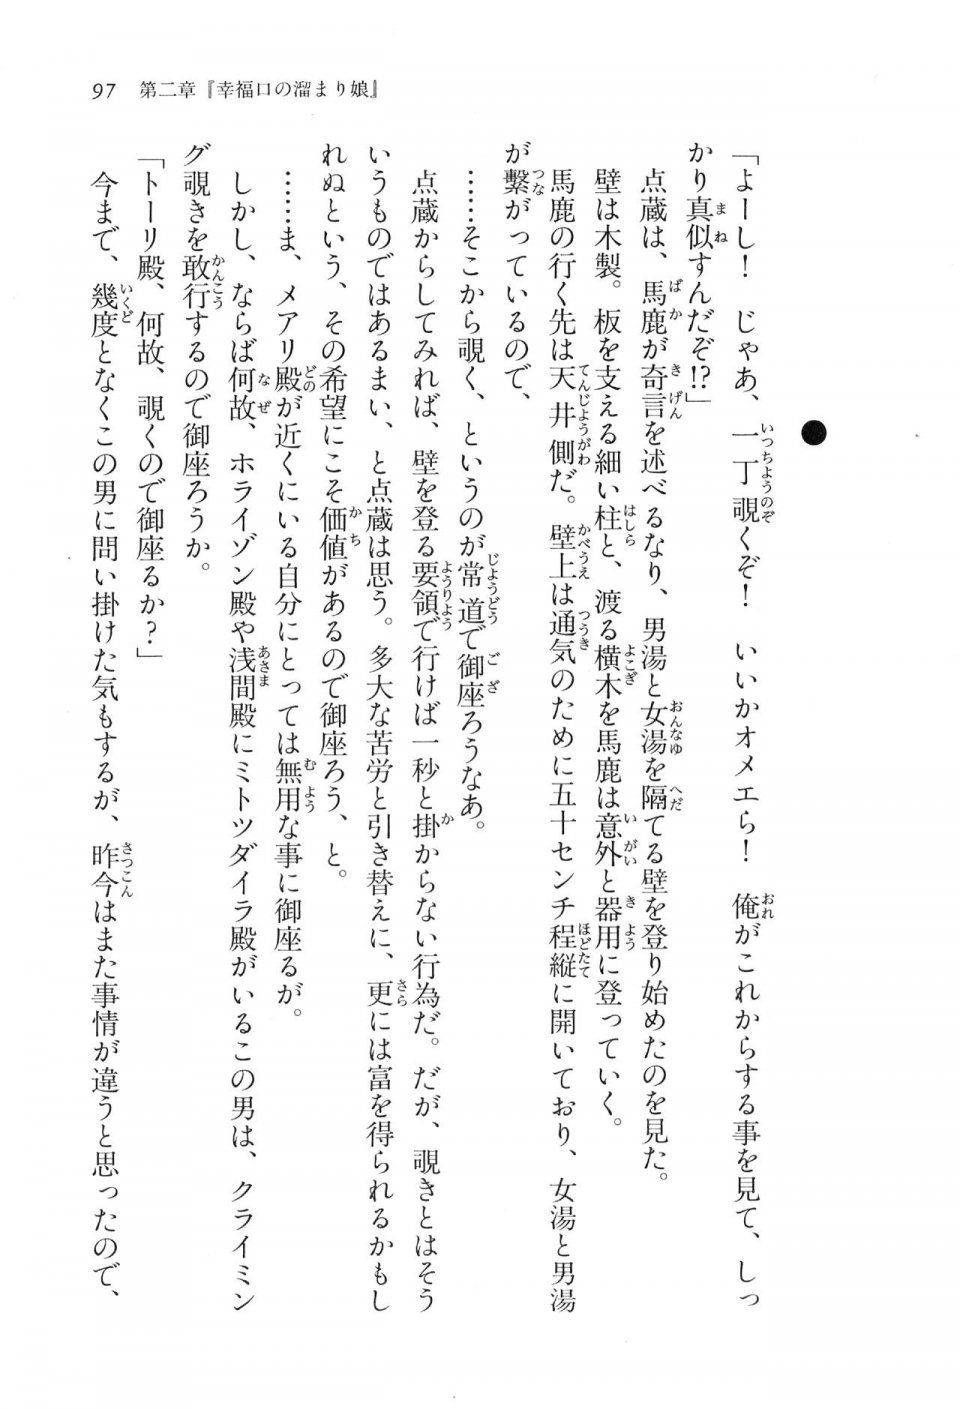 Kyoukai Senjou no Horizon LN Vol 16(7A) - Photo #97